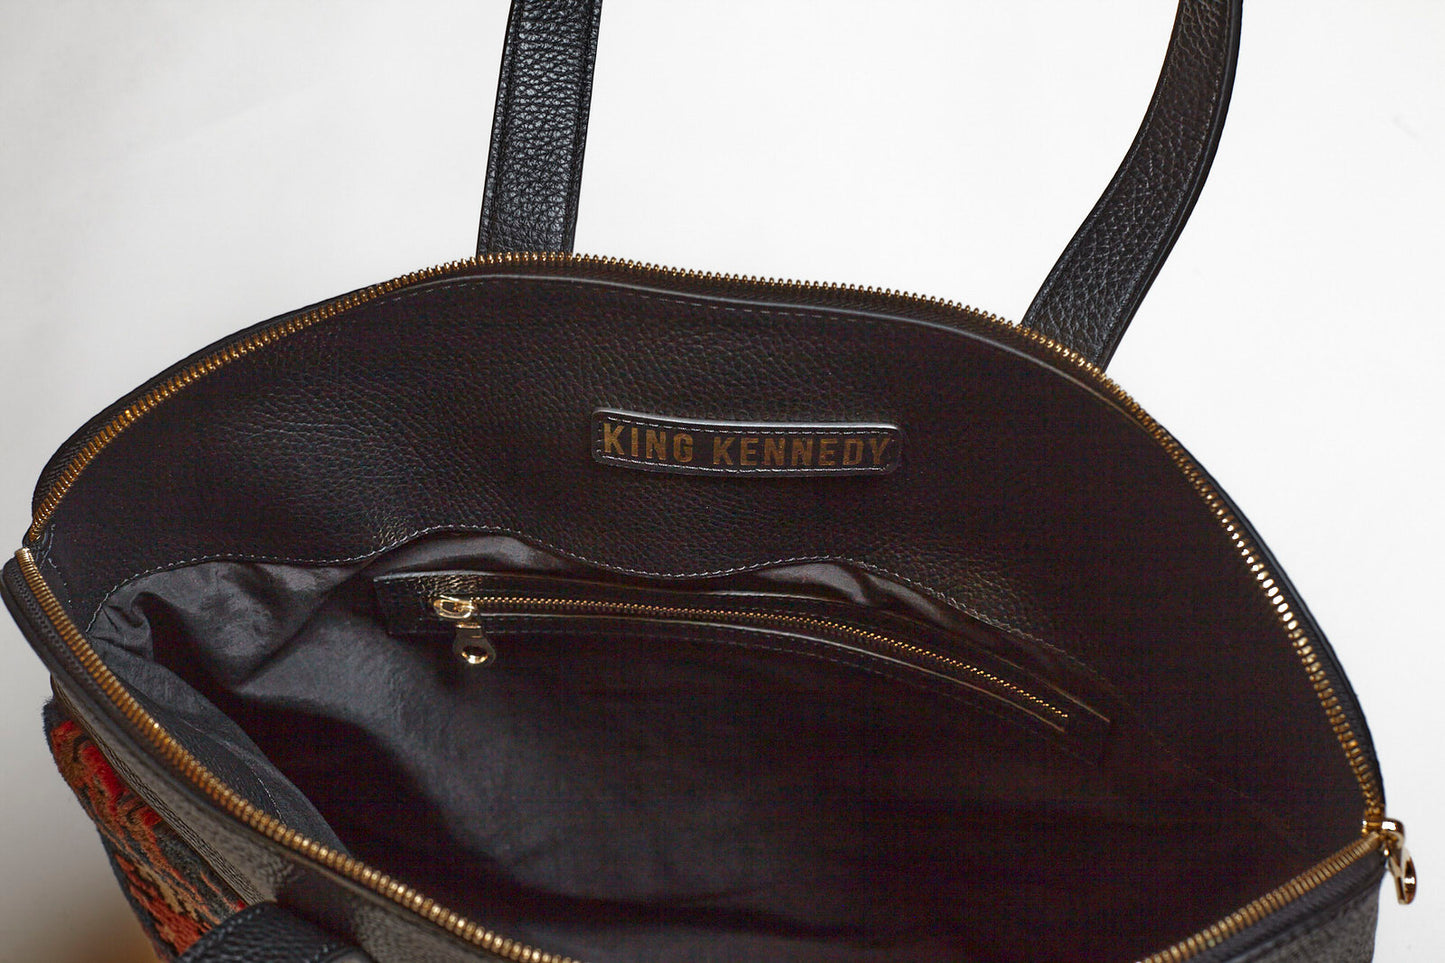 King Kennedy Despina Bag - 00011